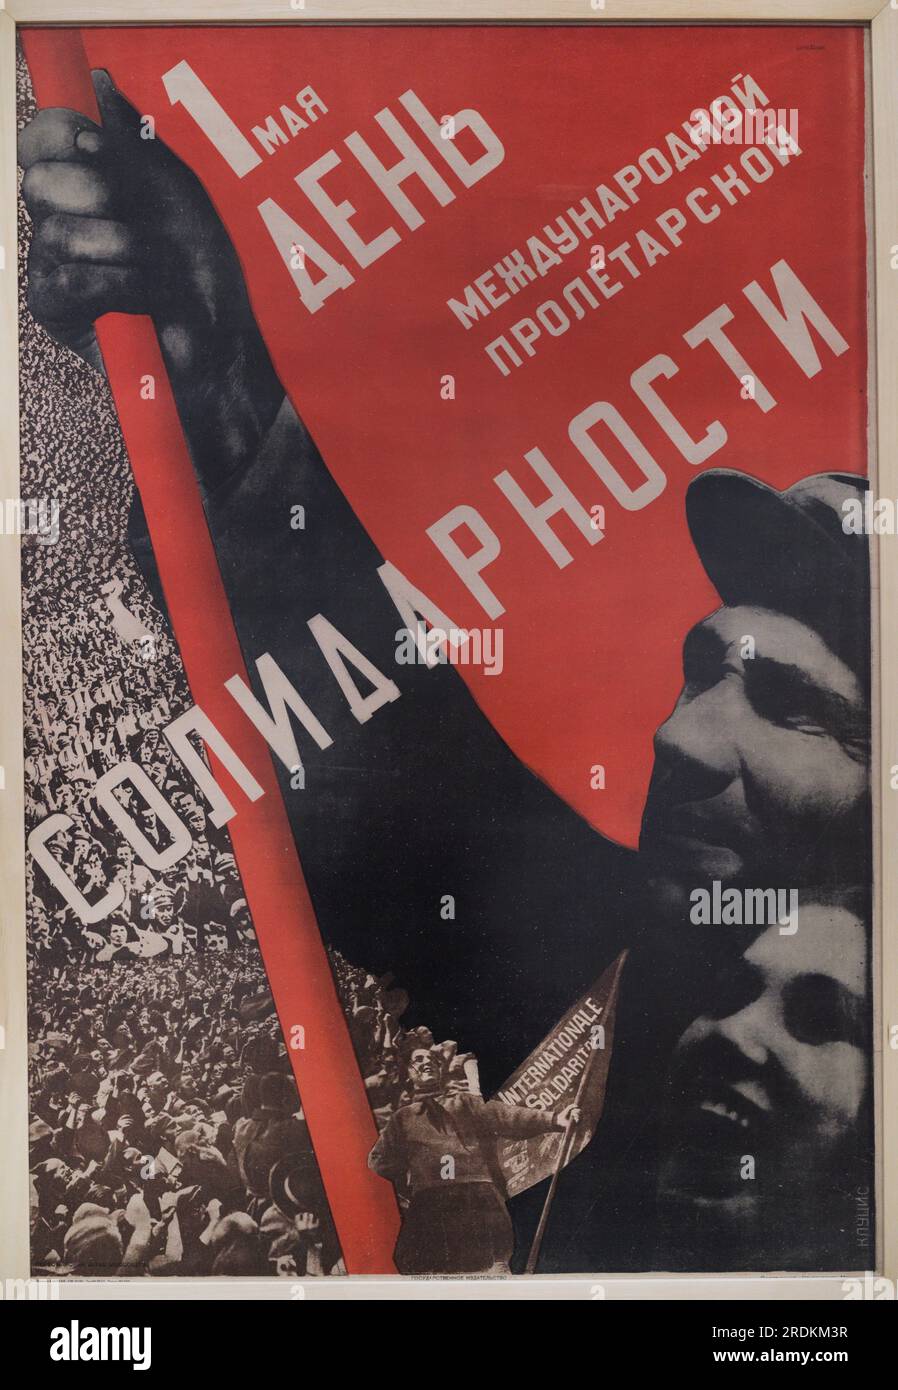 Gustav Klutsis (1895-1938). Artista russo-lettone. 1° maggio, giornata internazionale dei lavoratori della solidarietà. Poster, 1930. Letterpress su carta, 105,6 x 73,1 cm. Foto Stock